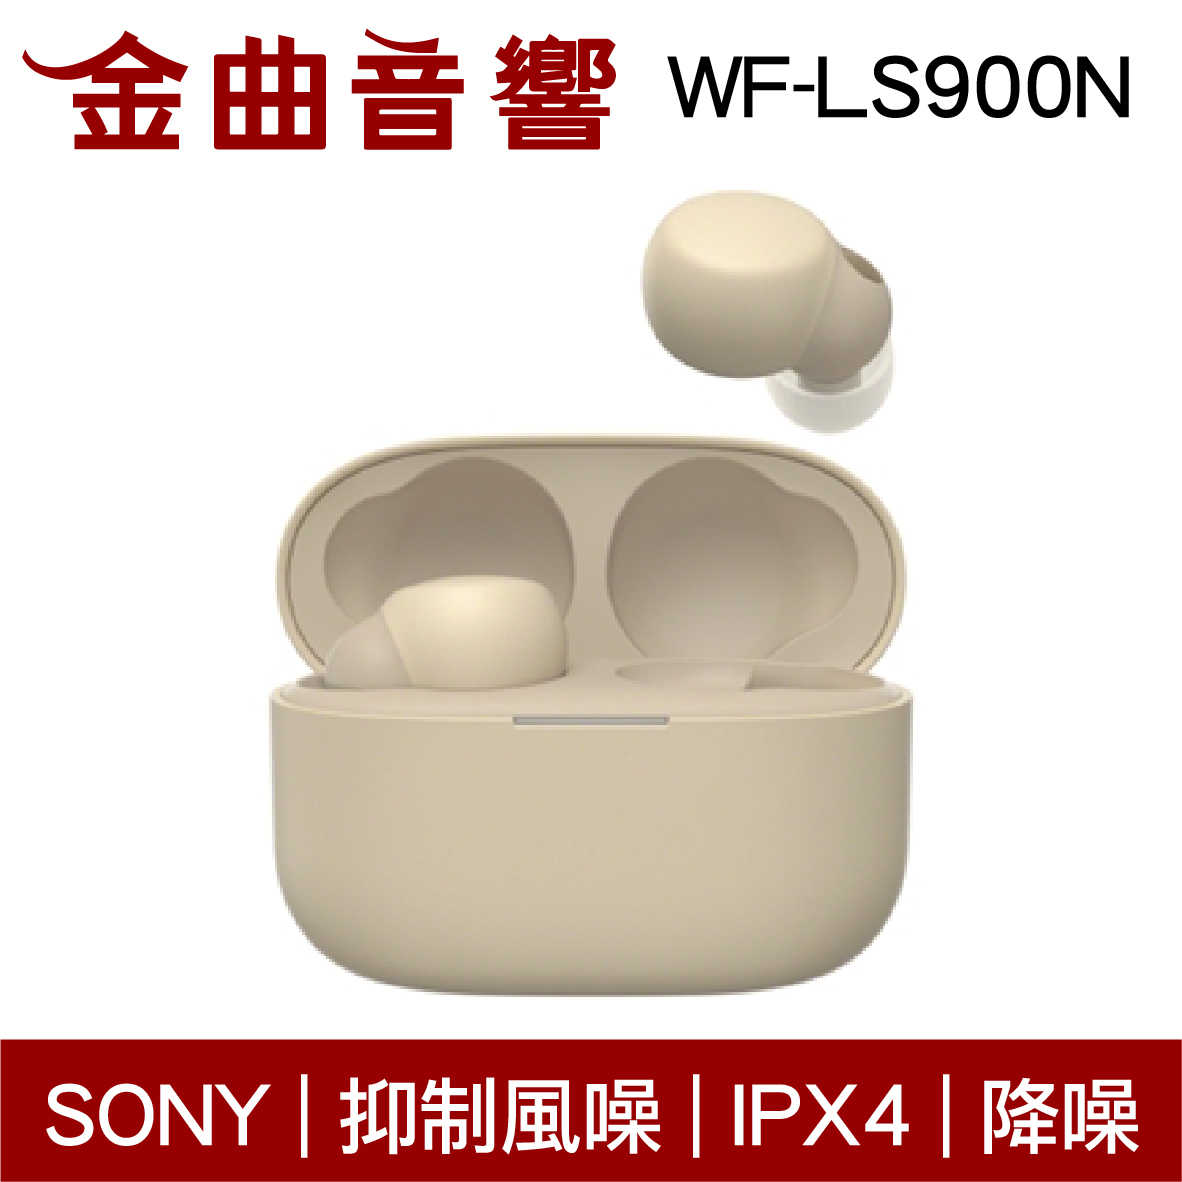 SONY 索尼 WF-LS900N 淡褐色 LinkBuds S 主動降噪 IPX4 真無線 藍芽耳機 | 金曲音響